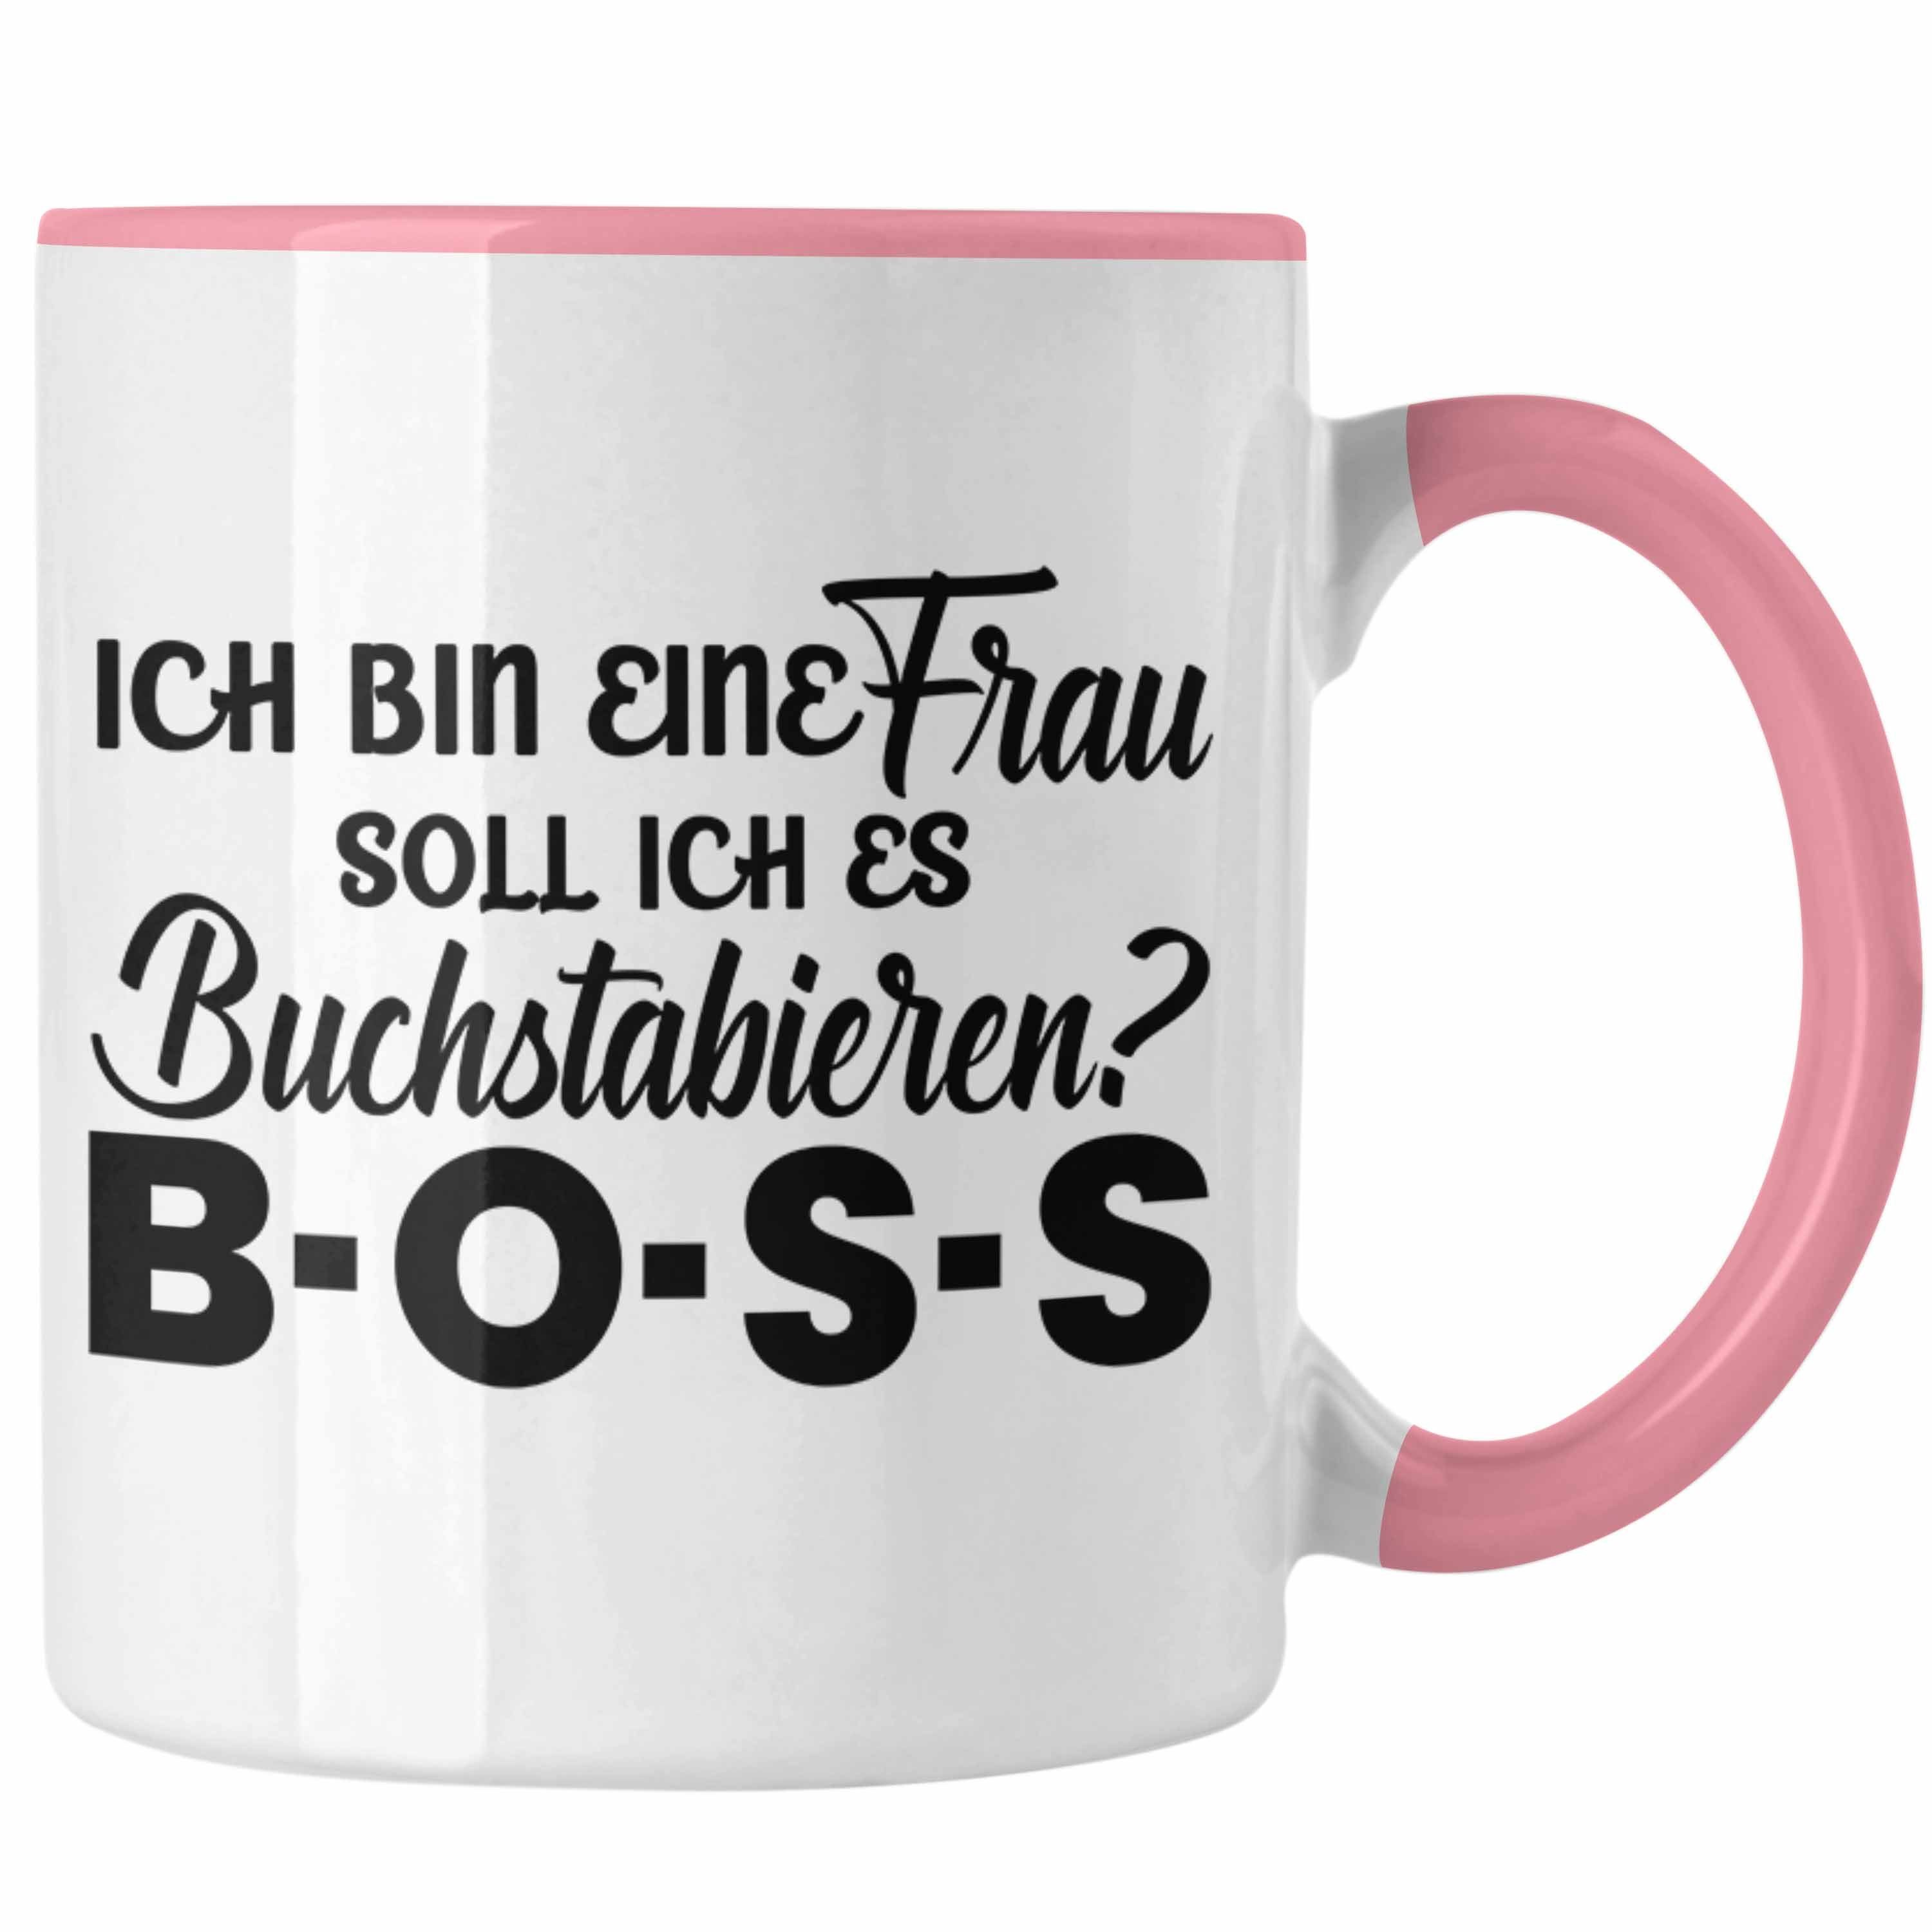 Starke für mit - Trendation Frauen Geschenk Rosa Tasse Trendation Tasse Spruch Tasse Frauentag Boss Frau Frauen